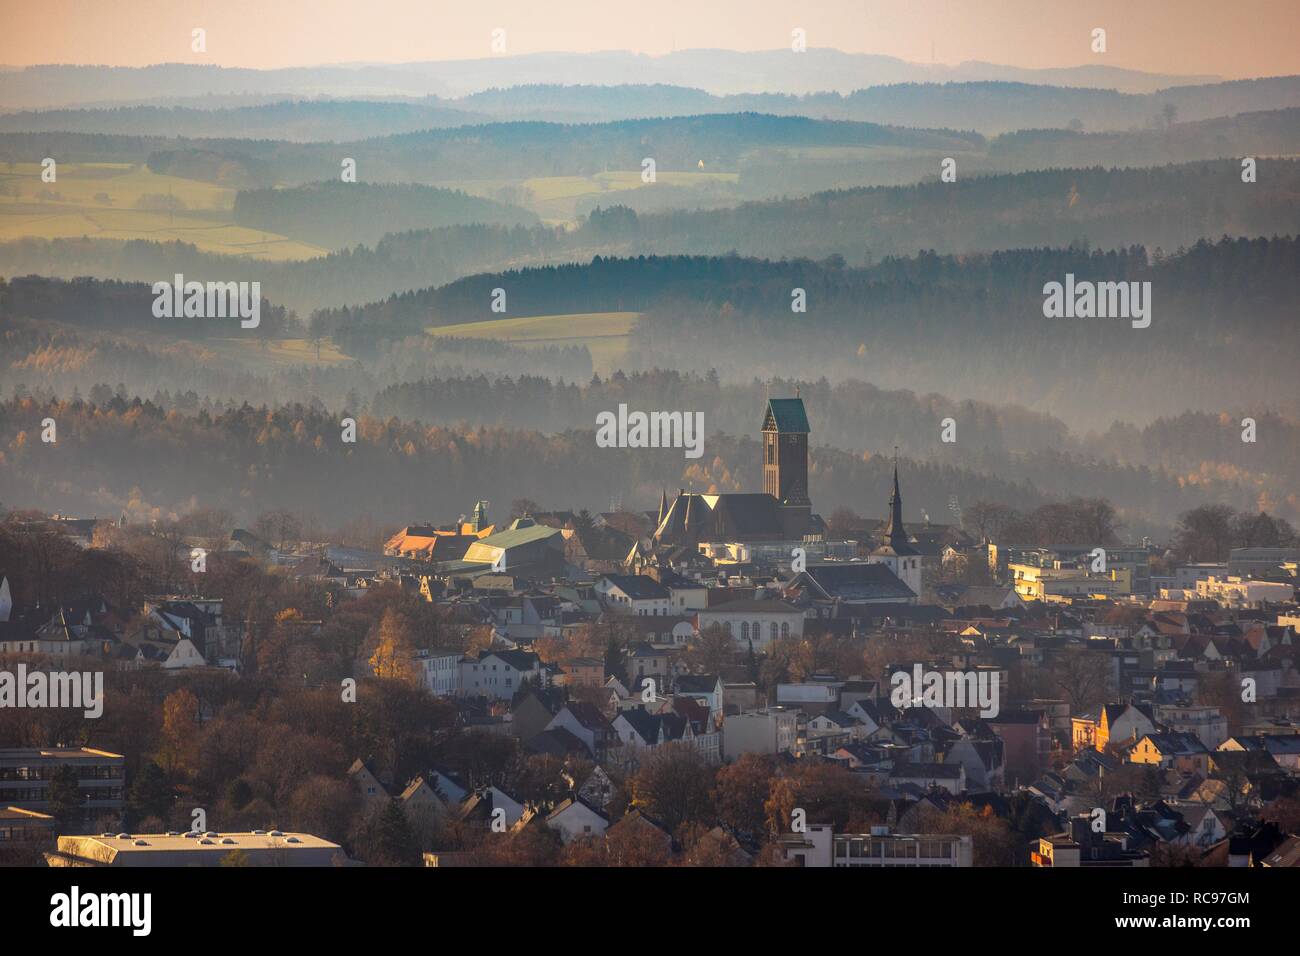 Luftaufnahme, Blick auf die Stadt mit der katholischen Kirche St. Joseph und Medardus, hügeligen Landschaft auf der Rückseite, Lüdenscheid, Sauerland Stockfoto